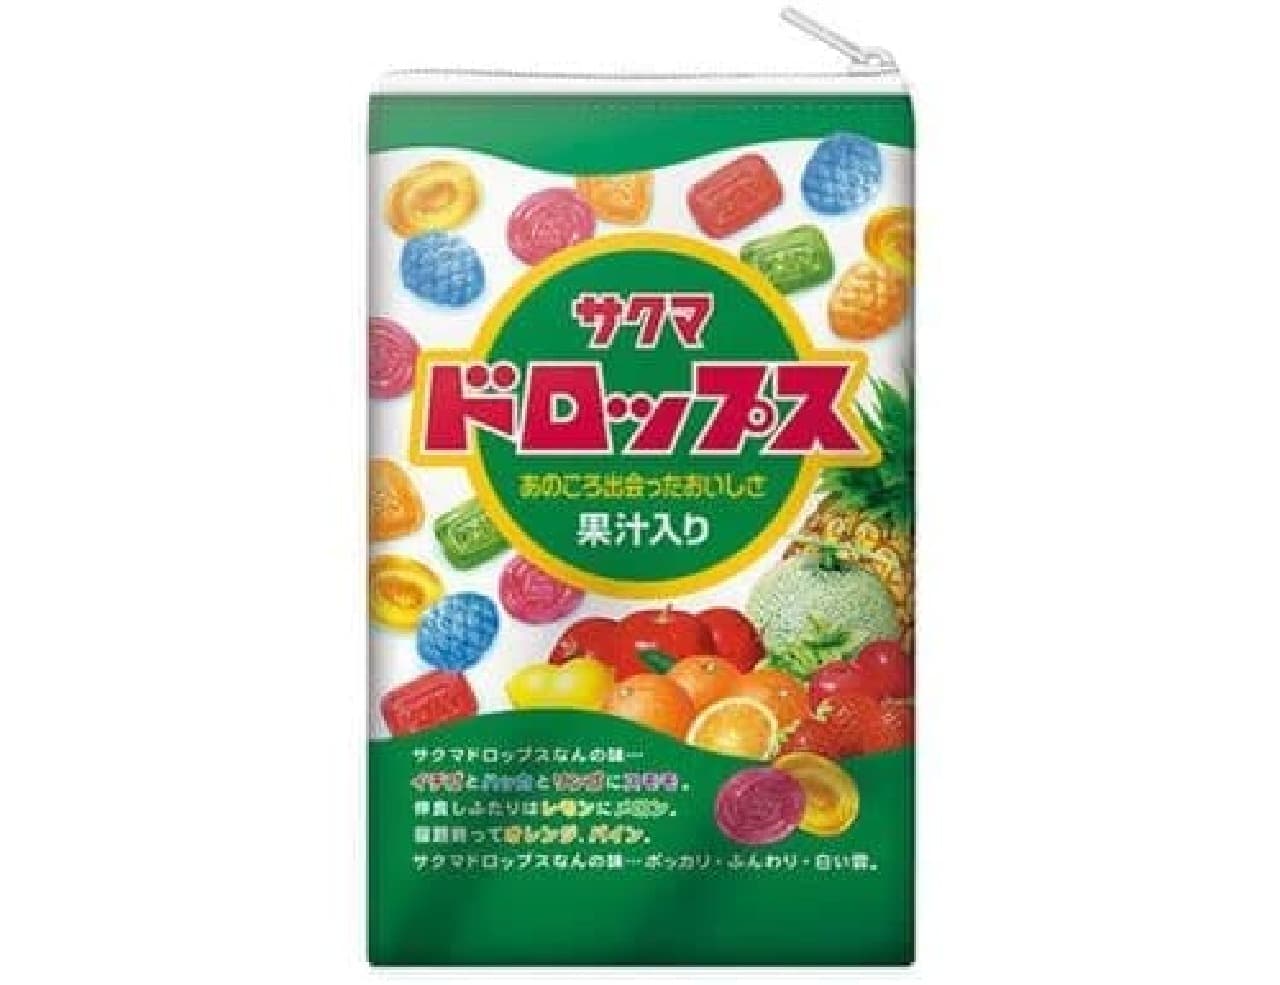 バンダイ「サクマ製菓 キャンディーポーチコレクション」